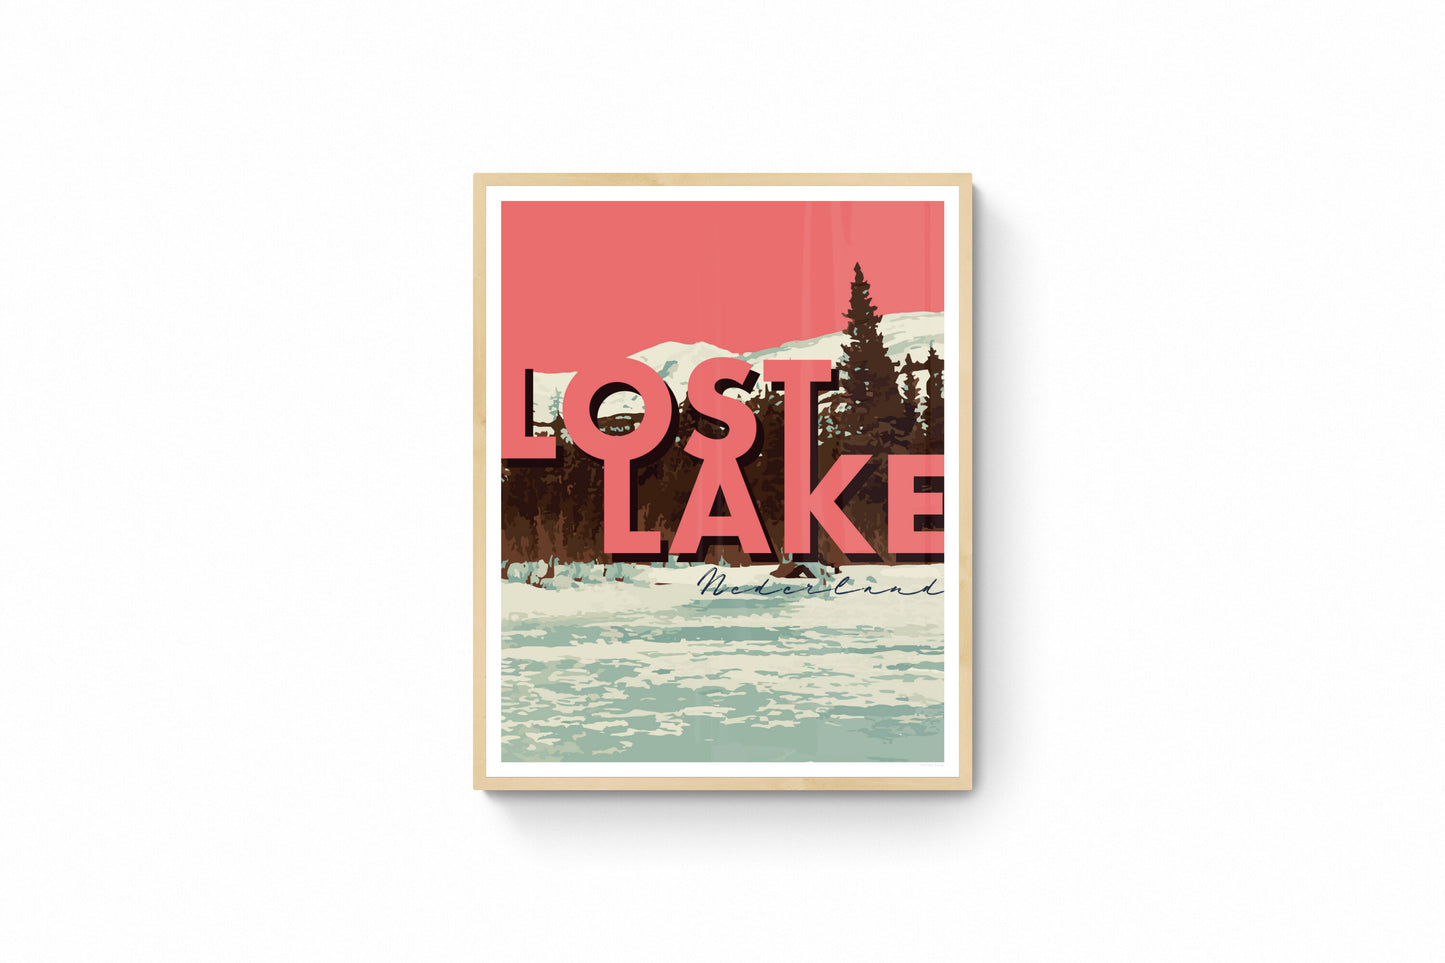 Nederland, Colorado - Lost Lake (Coral), arte de pared enmarcado con texto grande, 14 x 11